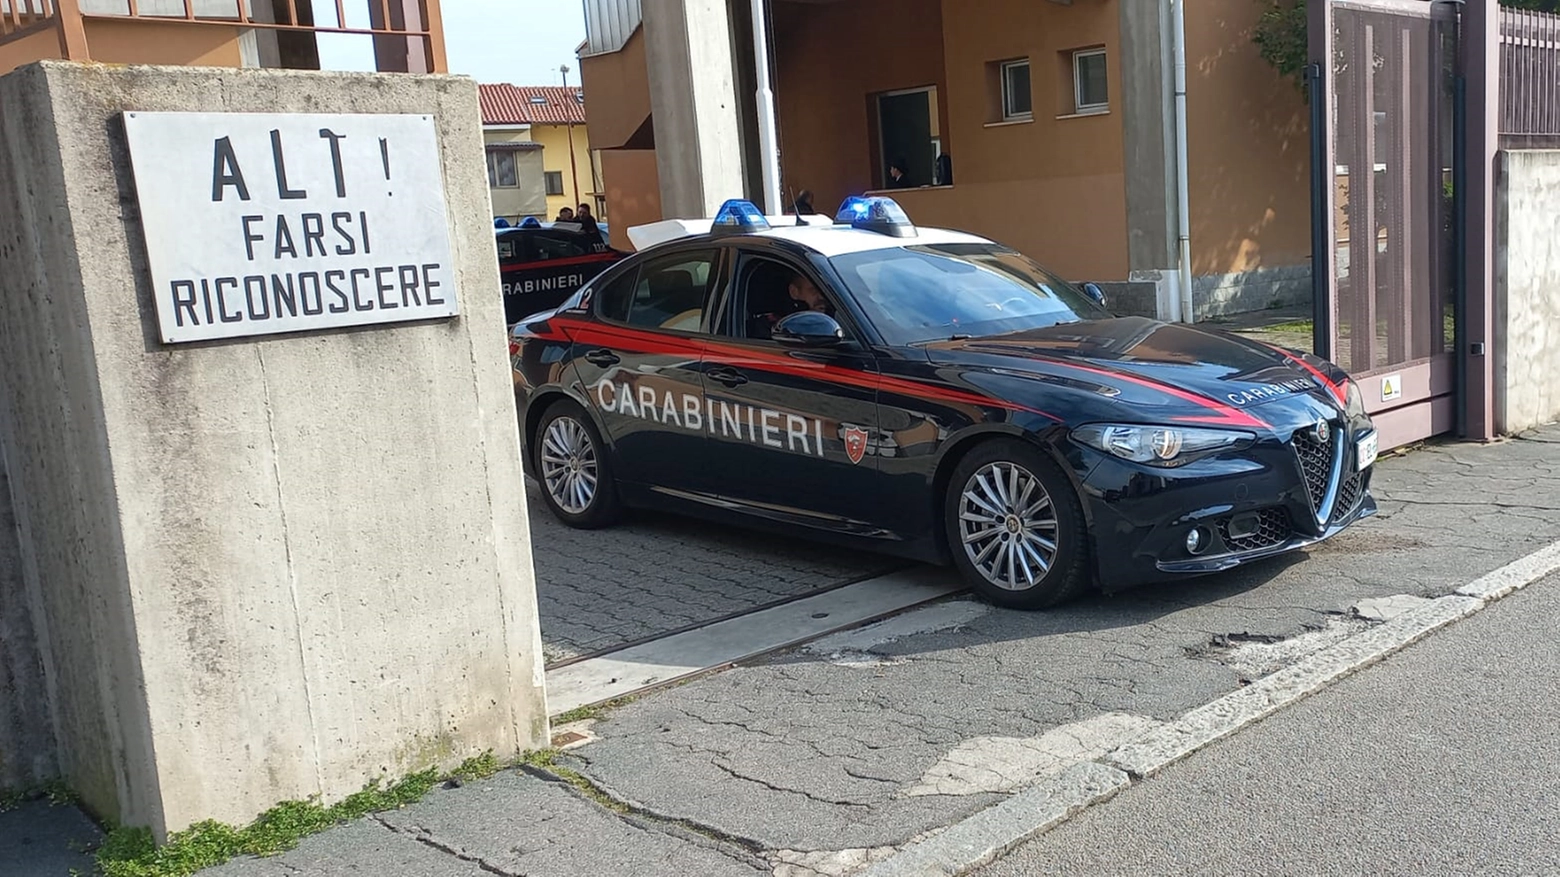 L'uomo, già alterato dall'alcol, ha aggredito i carabinieri giunti sul posto